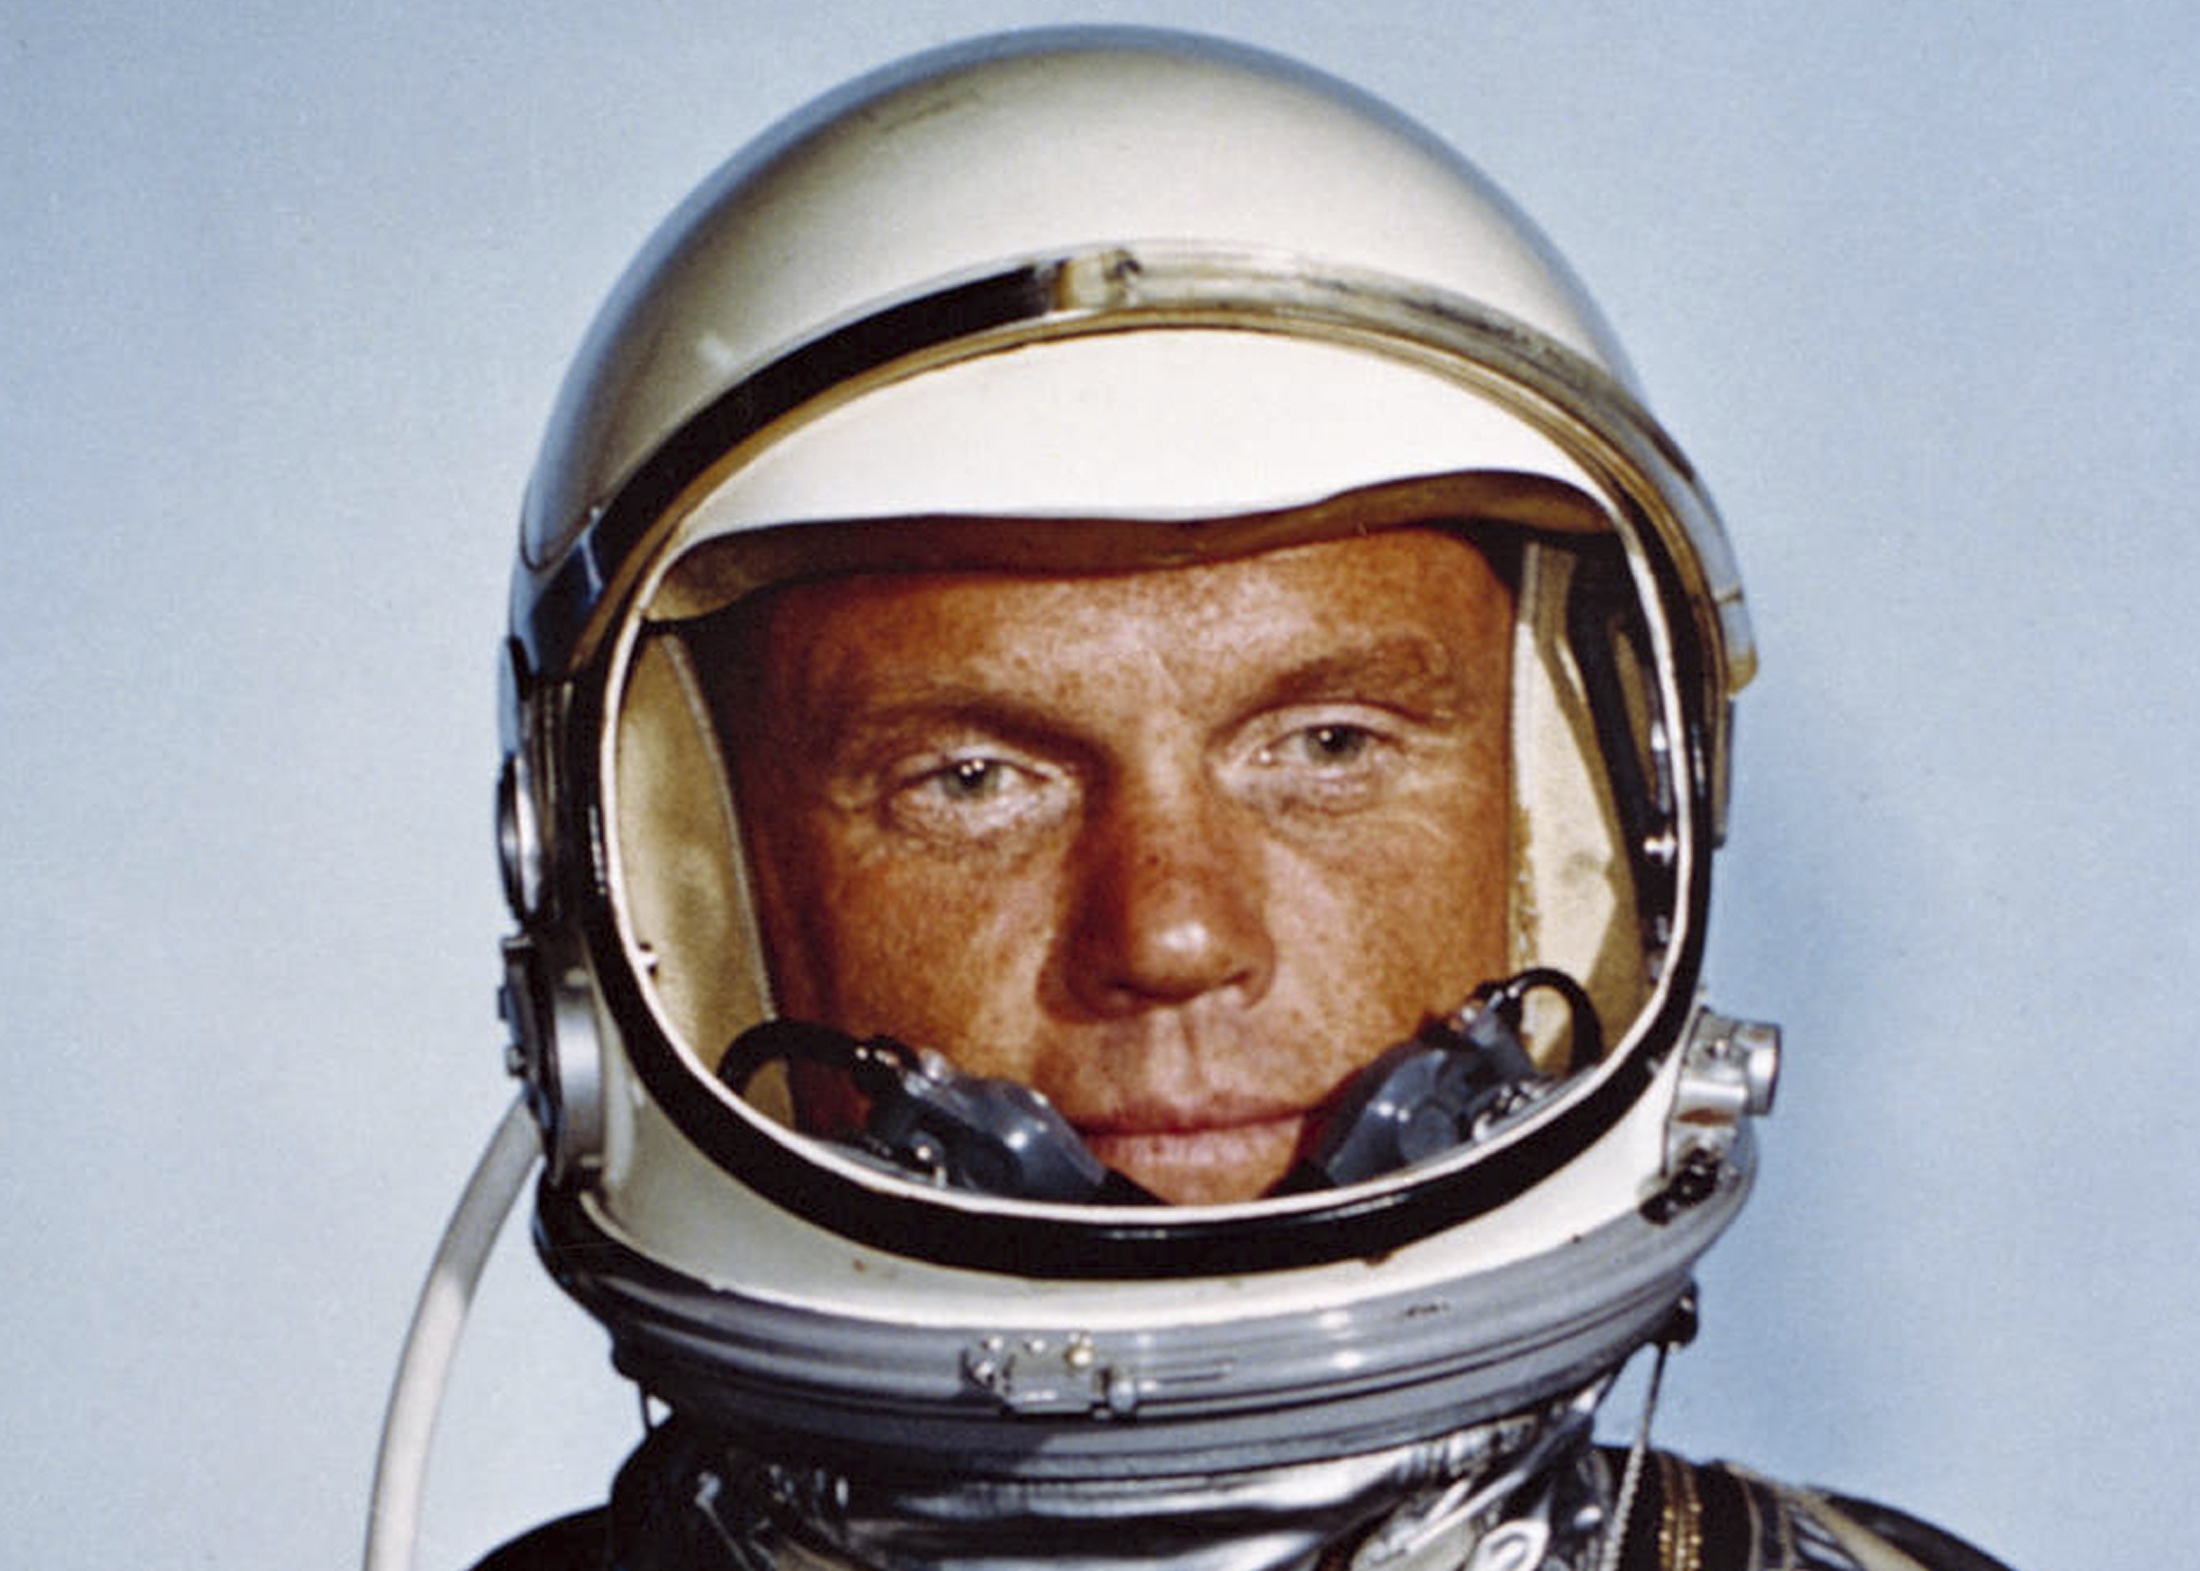 Πέθανε ο αστροναύτης - ήρωας των ΗΠΑ Τζον Γκλεν